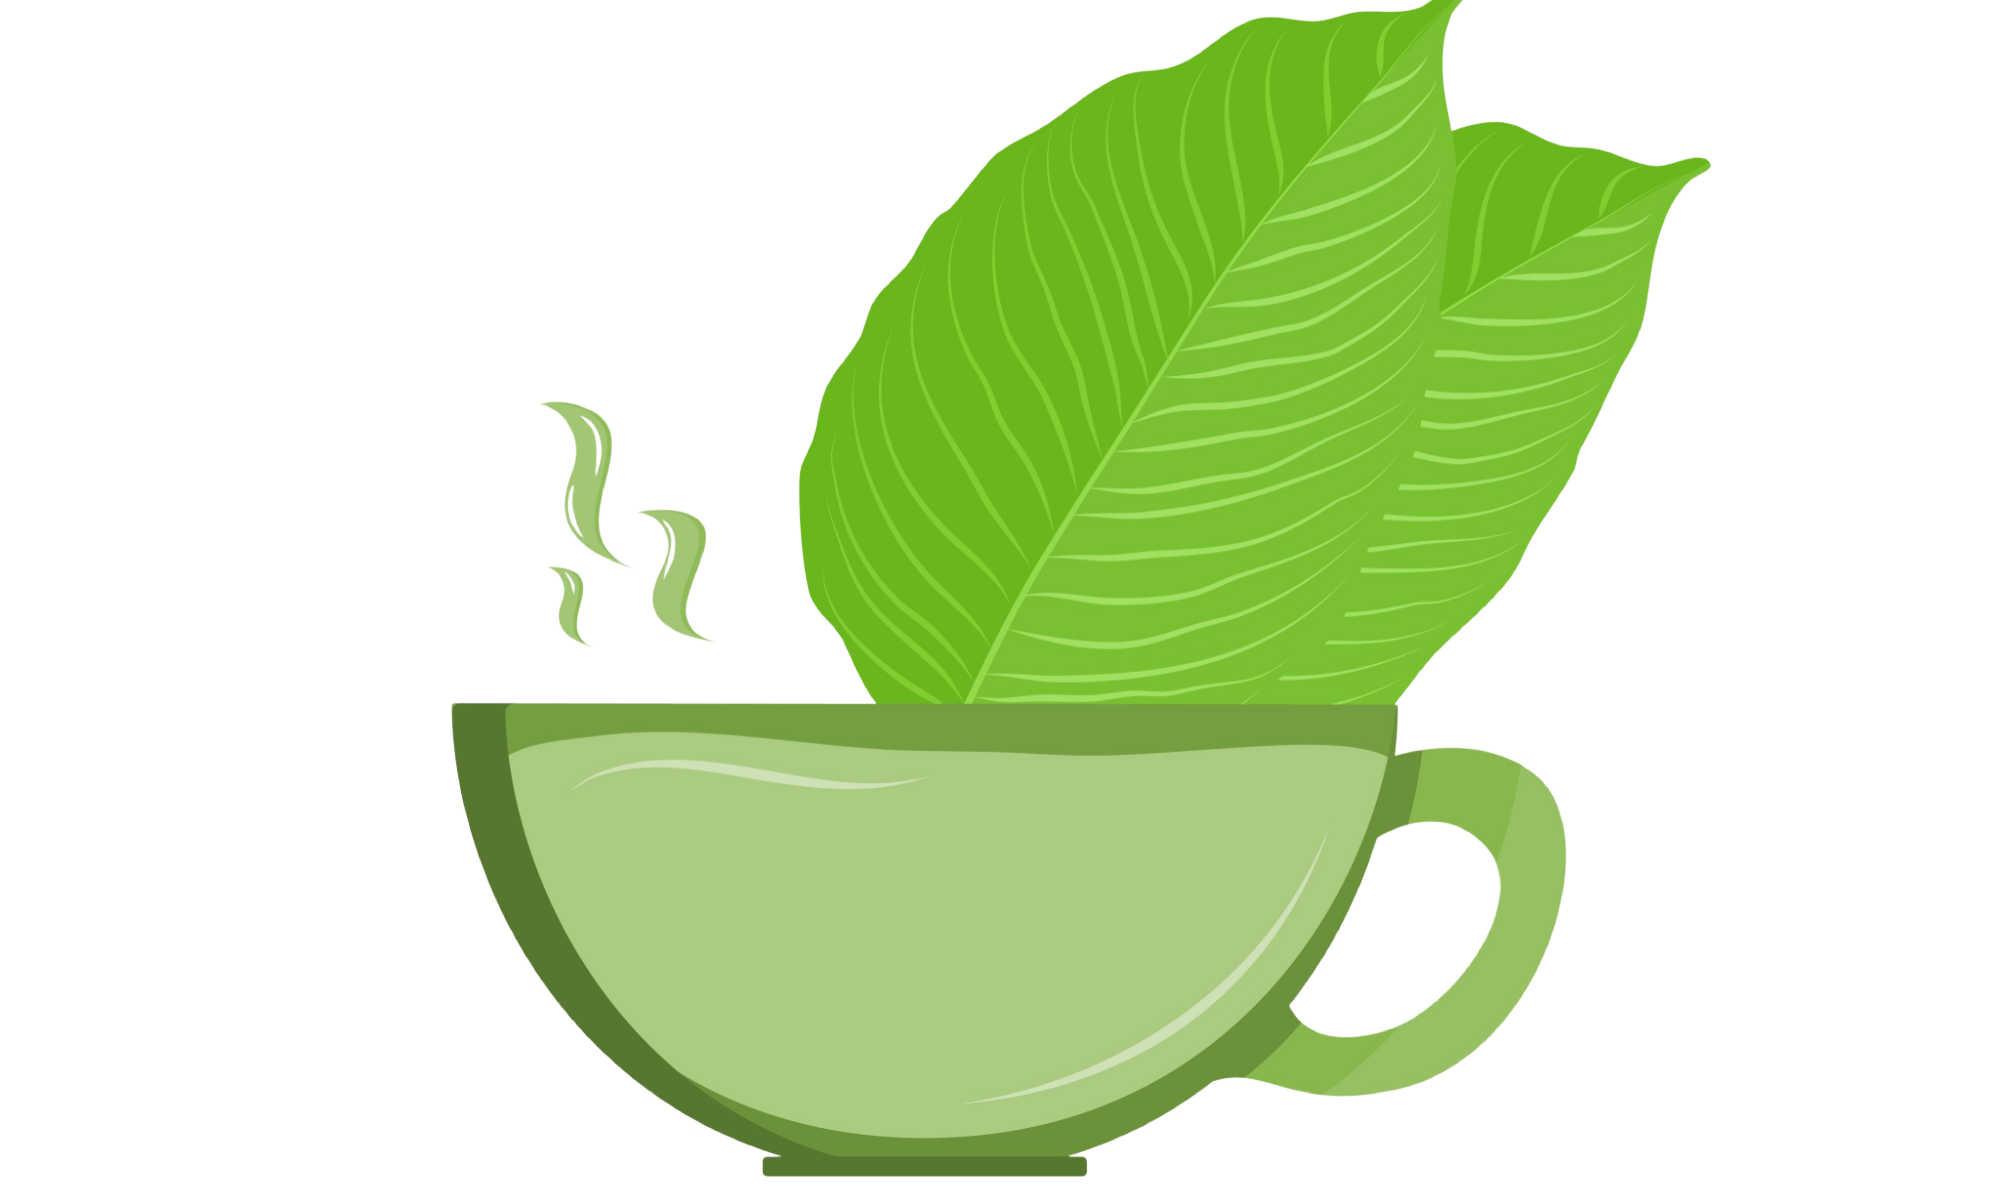 image of kratom tea